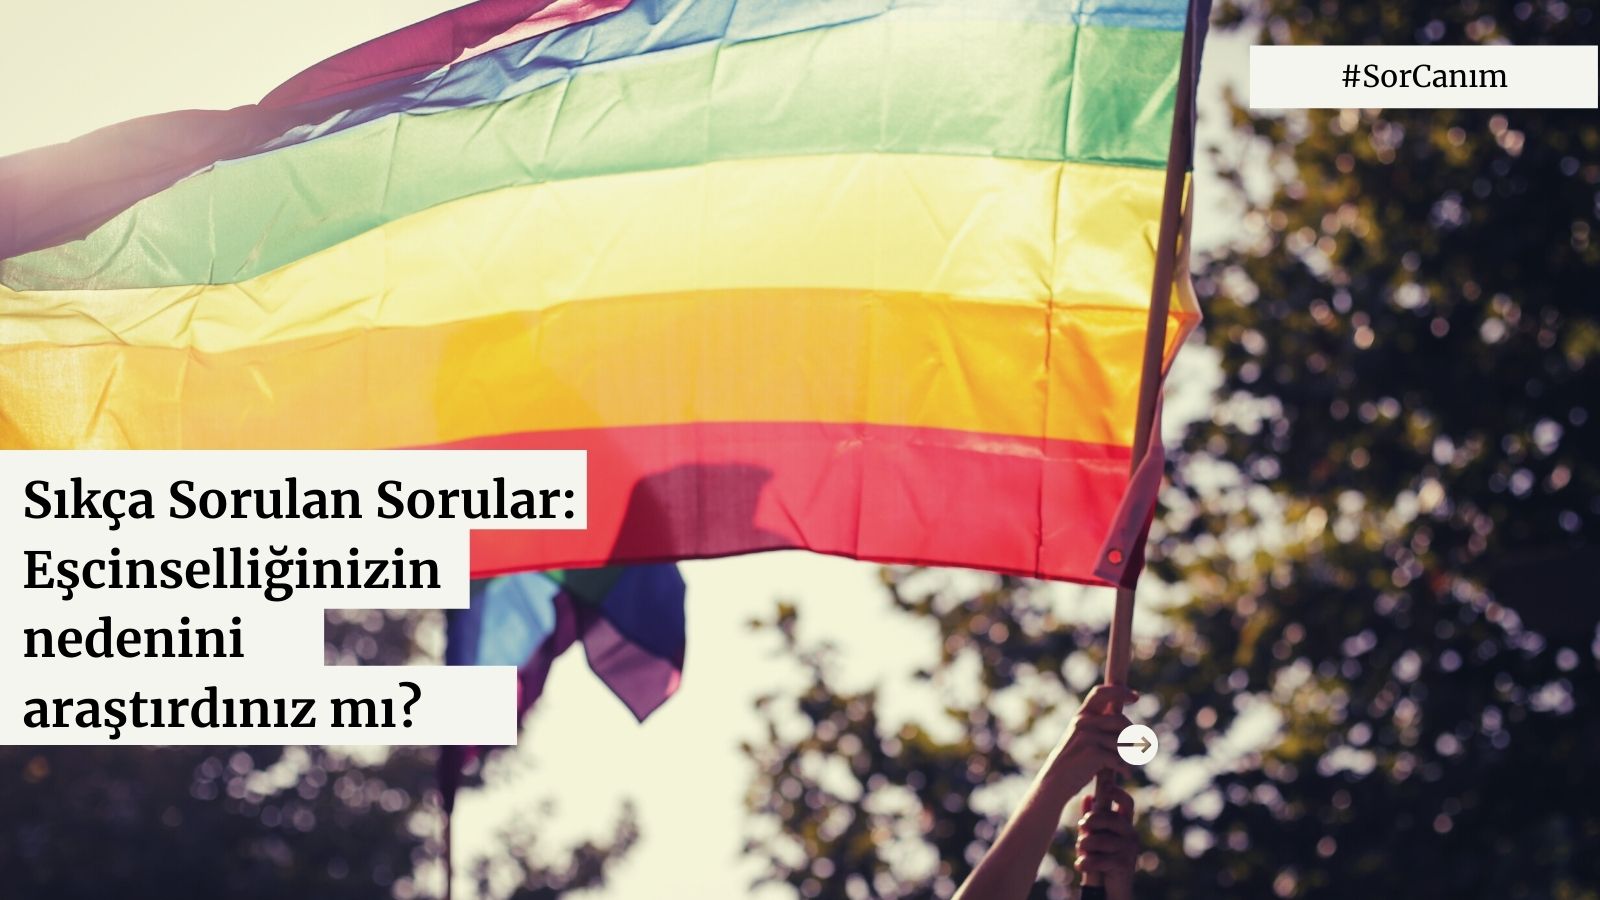 Sor canım: “Eşcinselliğinizin nedenini araştırdınız mı?” | Kaos GL - LGBTİ+ Haber Portalı